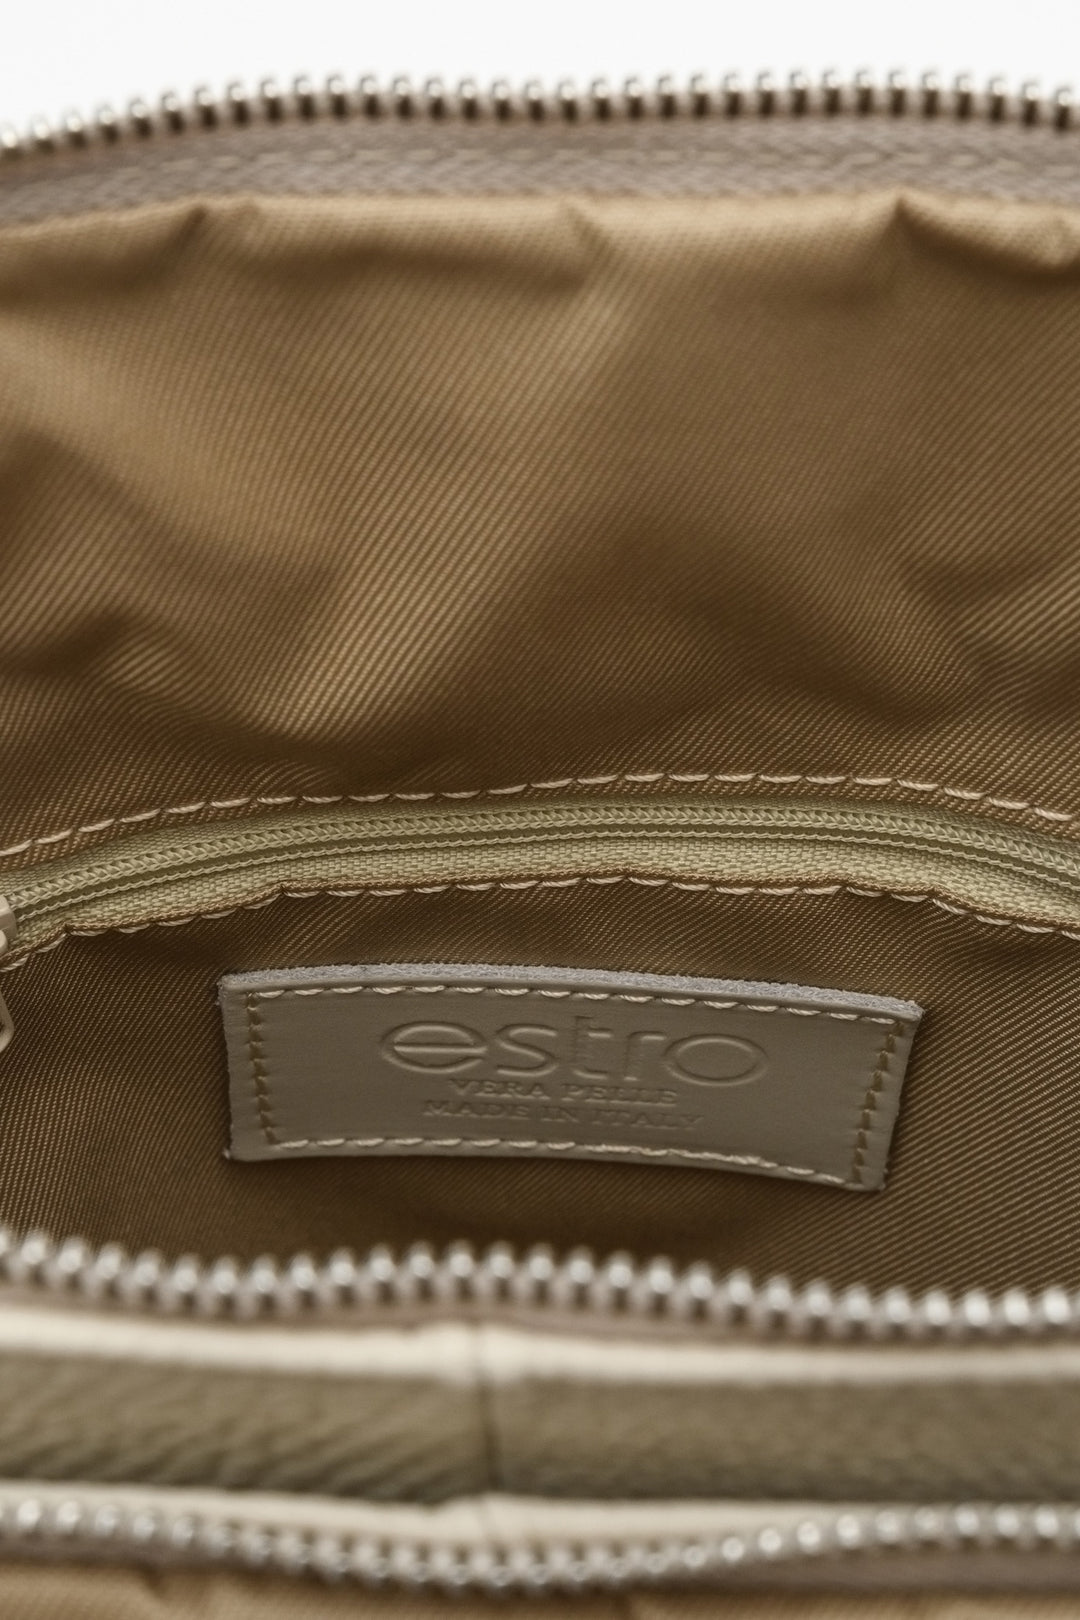 Jasnobeżowy plecak damski z licowej skóry naturalnej Estro produkowany we Włoszech - zbliżenie na detale.